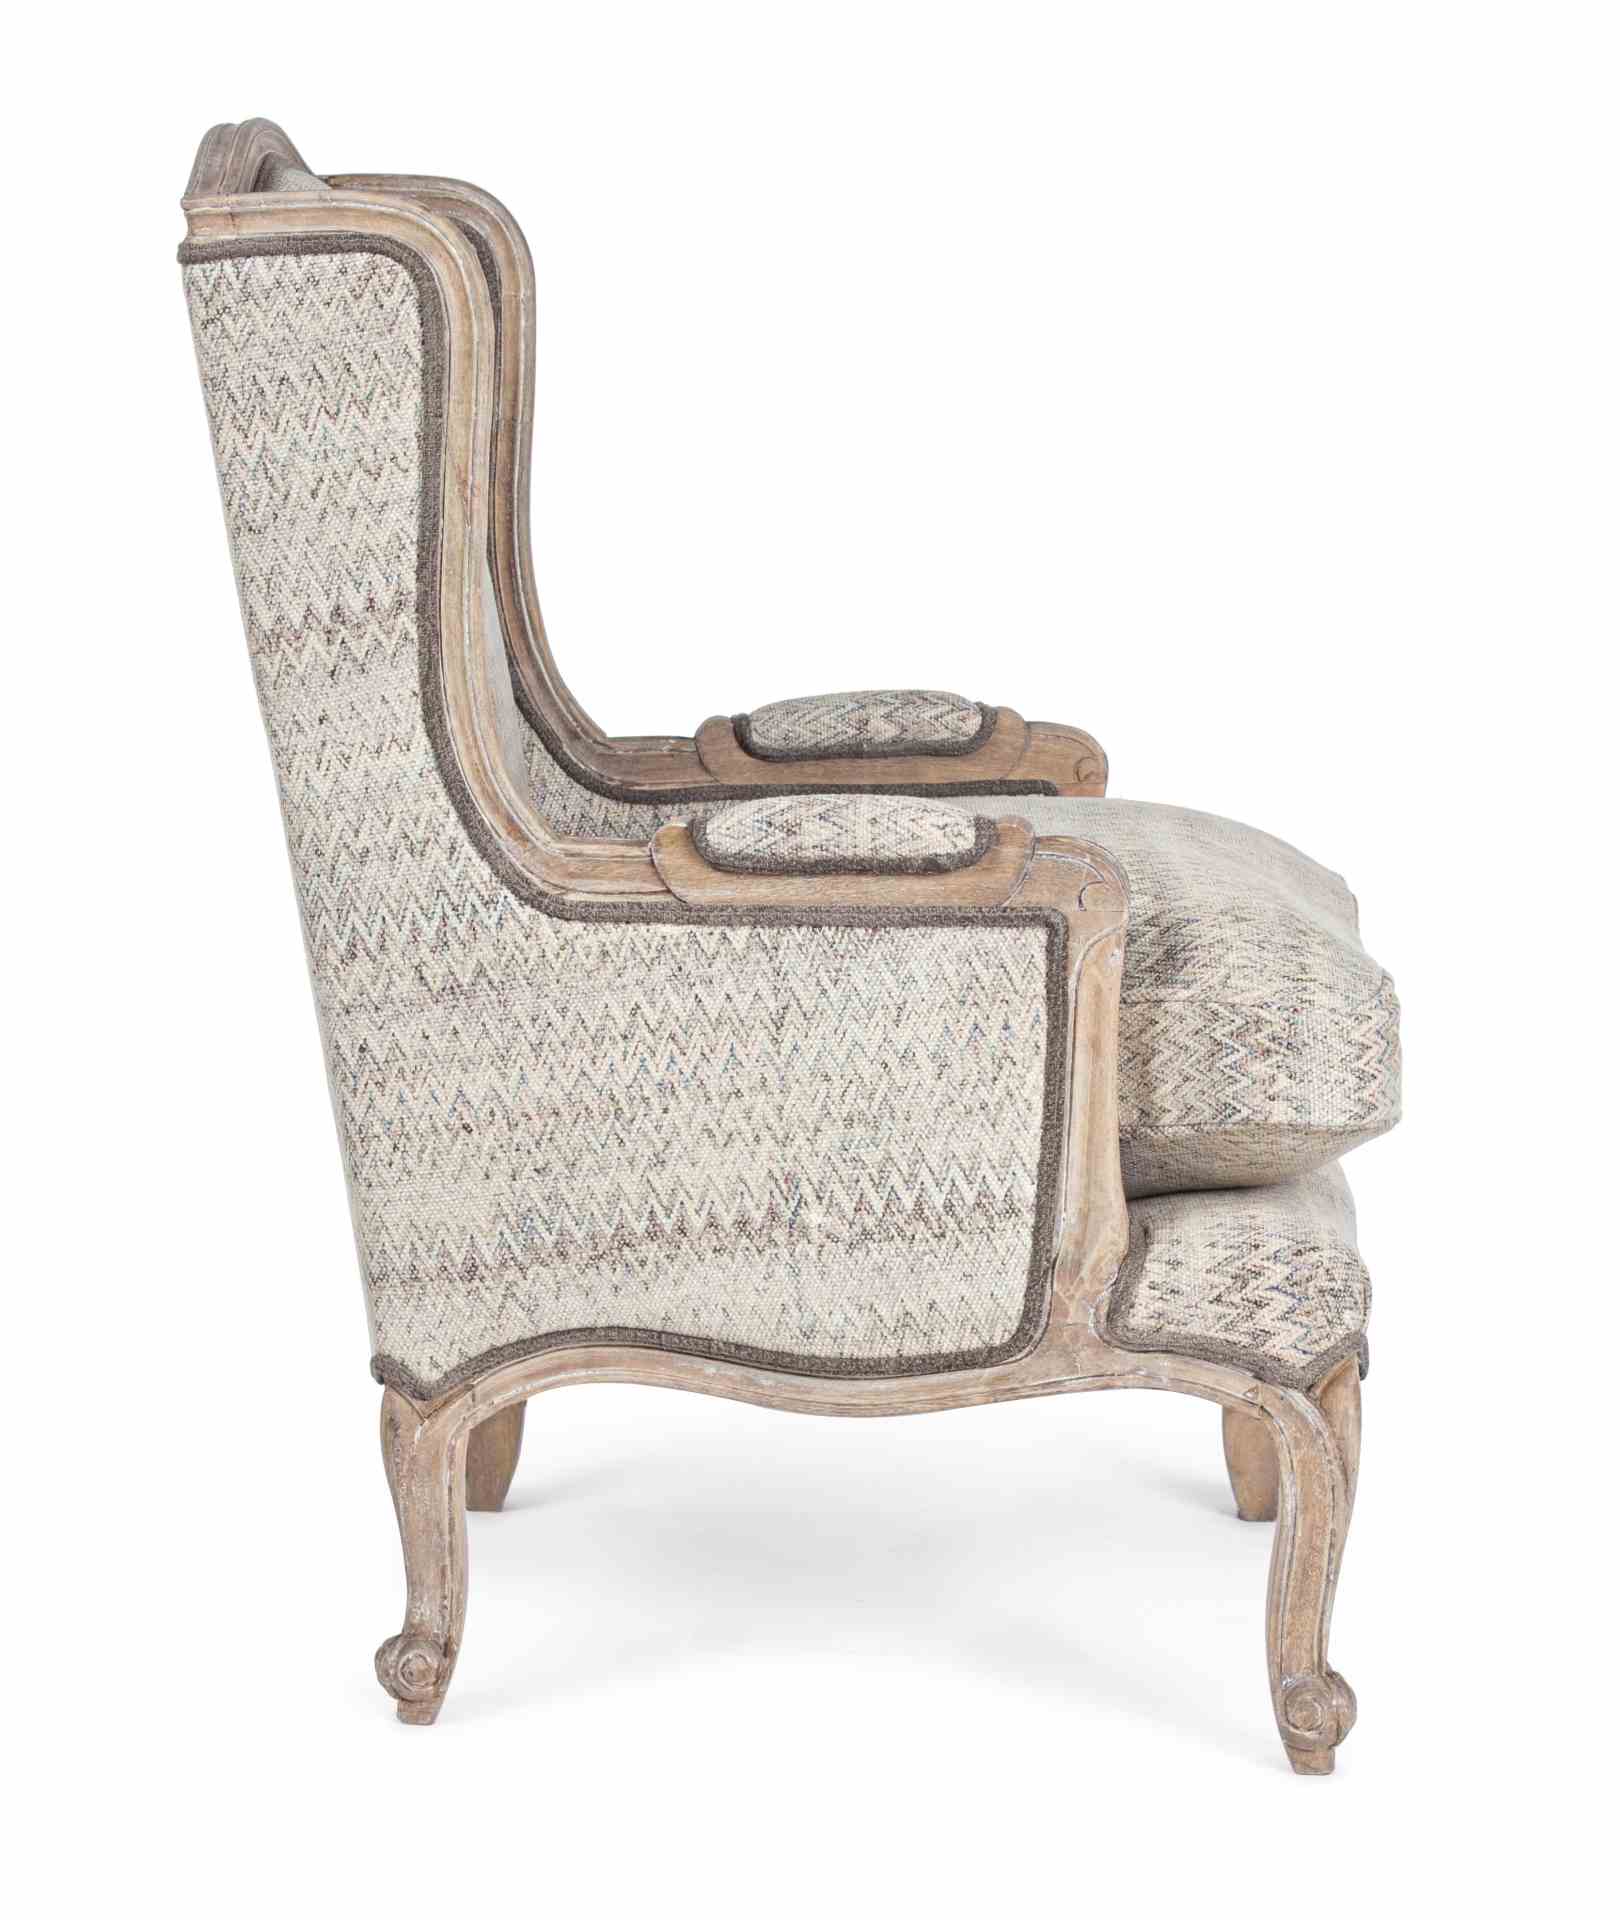 Der Sessel Elodie überzeugt mit seinem klassischen Design. Gefertigt wurde er aus Stoff, welcher einen beigen Farbton besitzt. Das Gestell ist aus Mangoholz und hat eine natürliche Farbe. Der Sessel besitzt eine Sitzhöhe von 50 cm. Die Breite beträgt 70 c